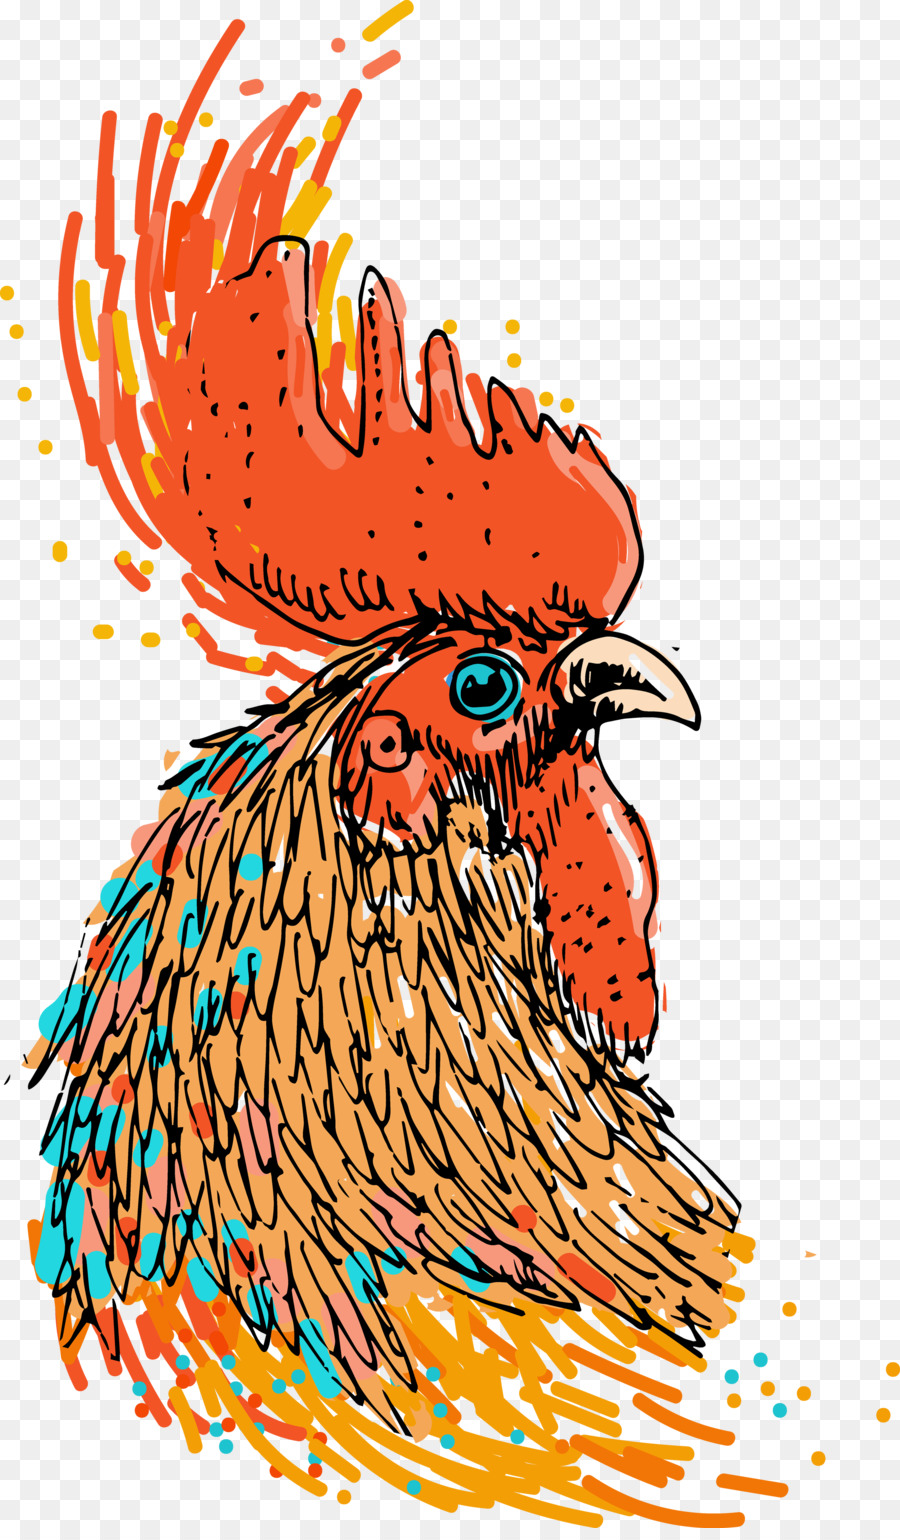 Pollo Illustrazione Vettoriale grafica fotografia di Stock Royalty free - pollo